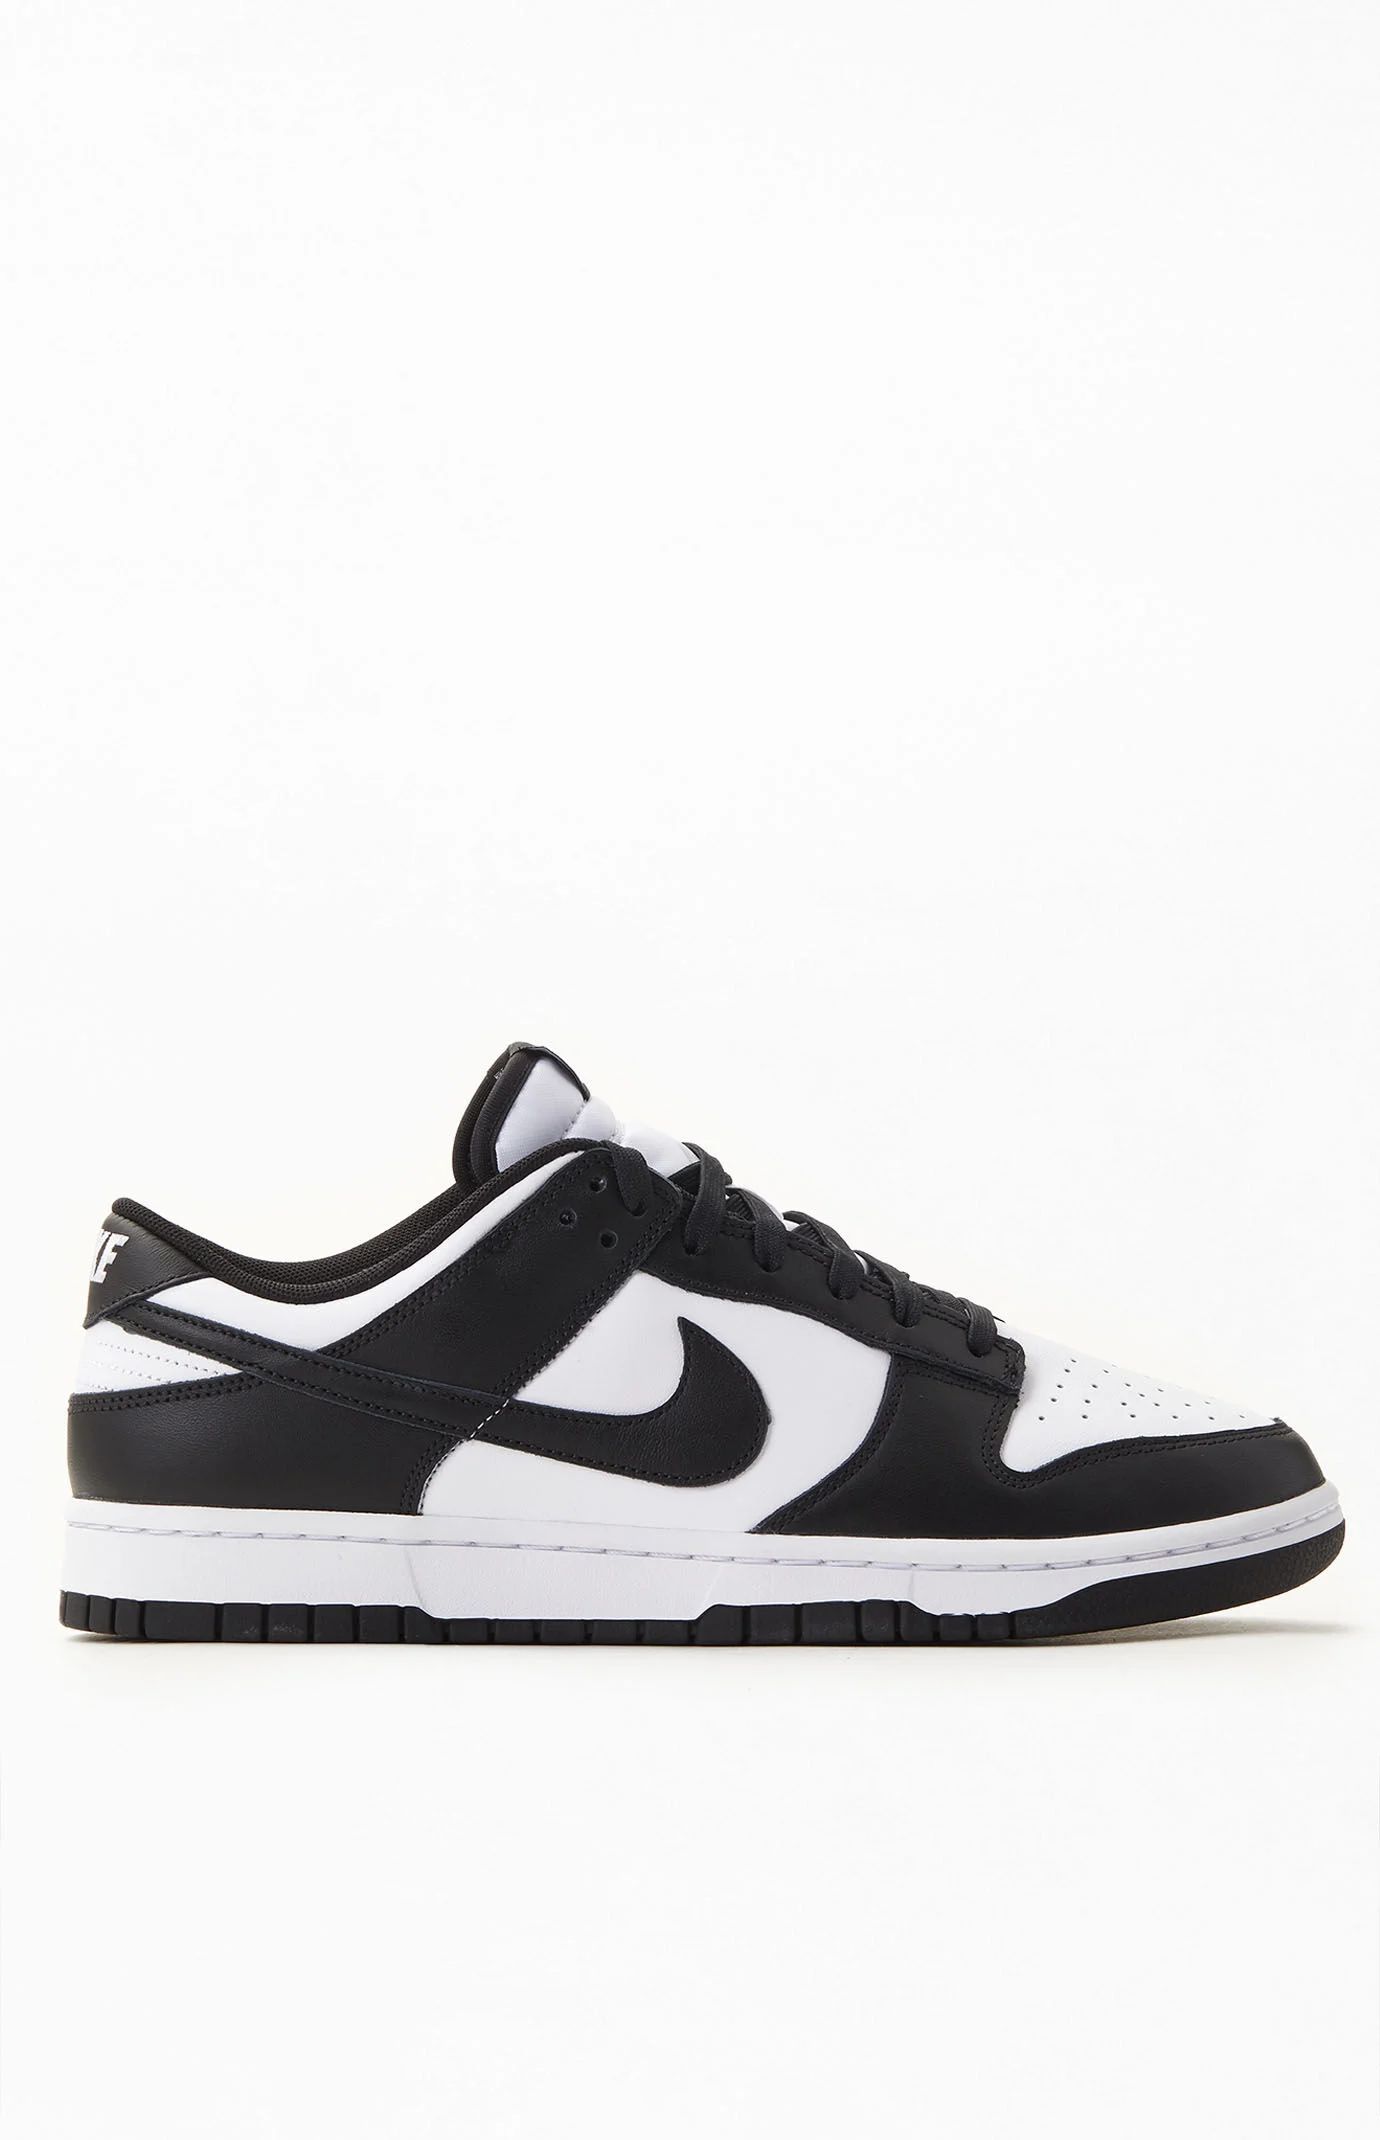 Nike Mens Dunk Low Panda Shoes - Black/white size M9 |W10.5 | PacSun